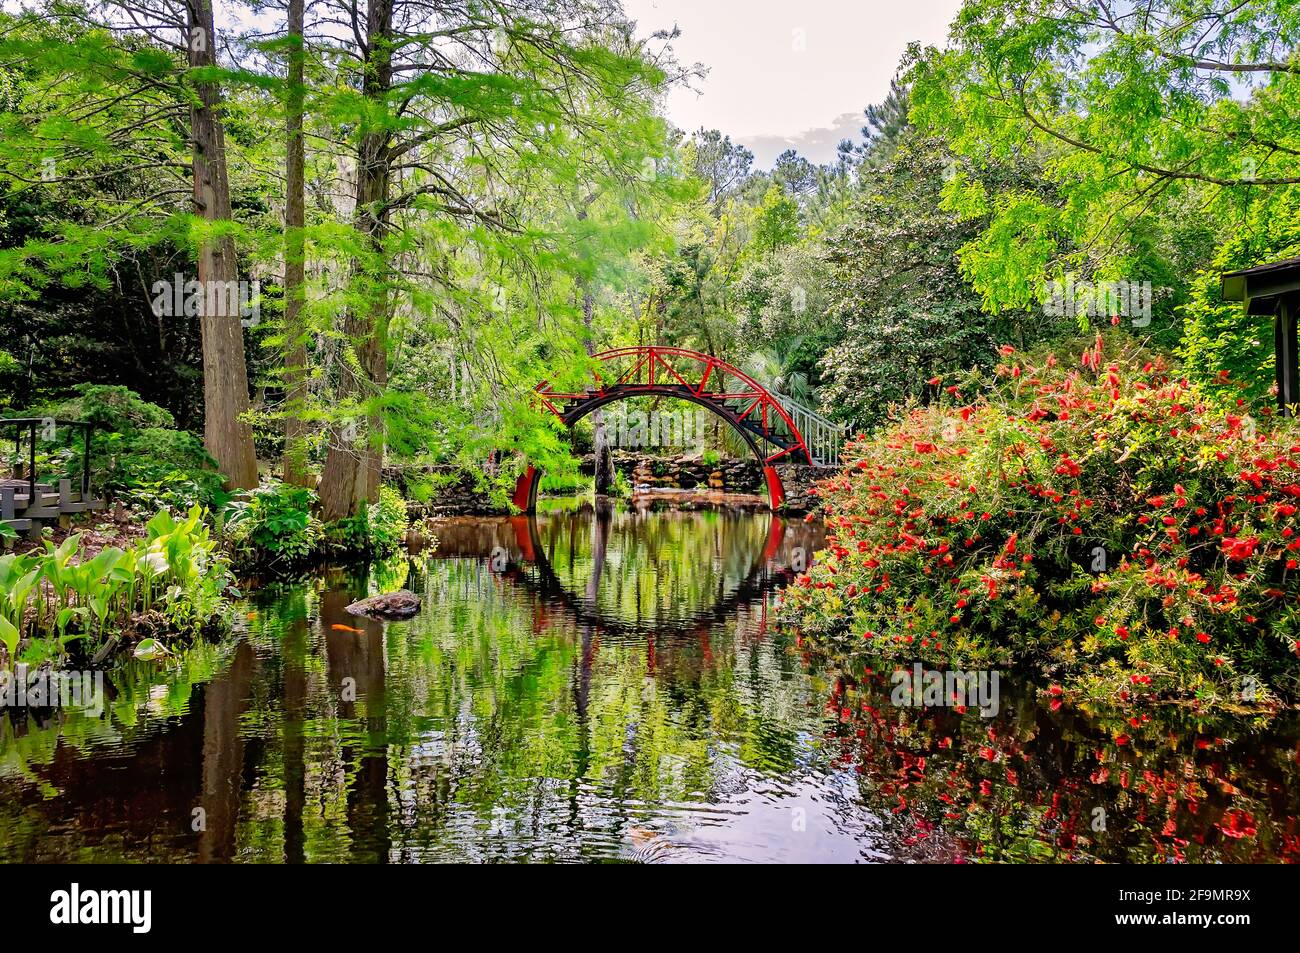 Le pont de lune, également appelé pont oriental, est photographié dans le jardin américain-asiatique des jardins Bellingrath à Theodore, Alabama. Banque D'Images